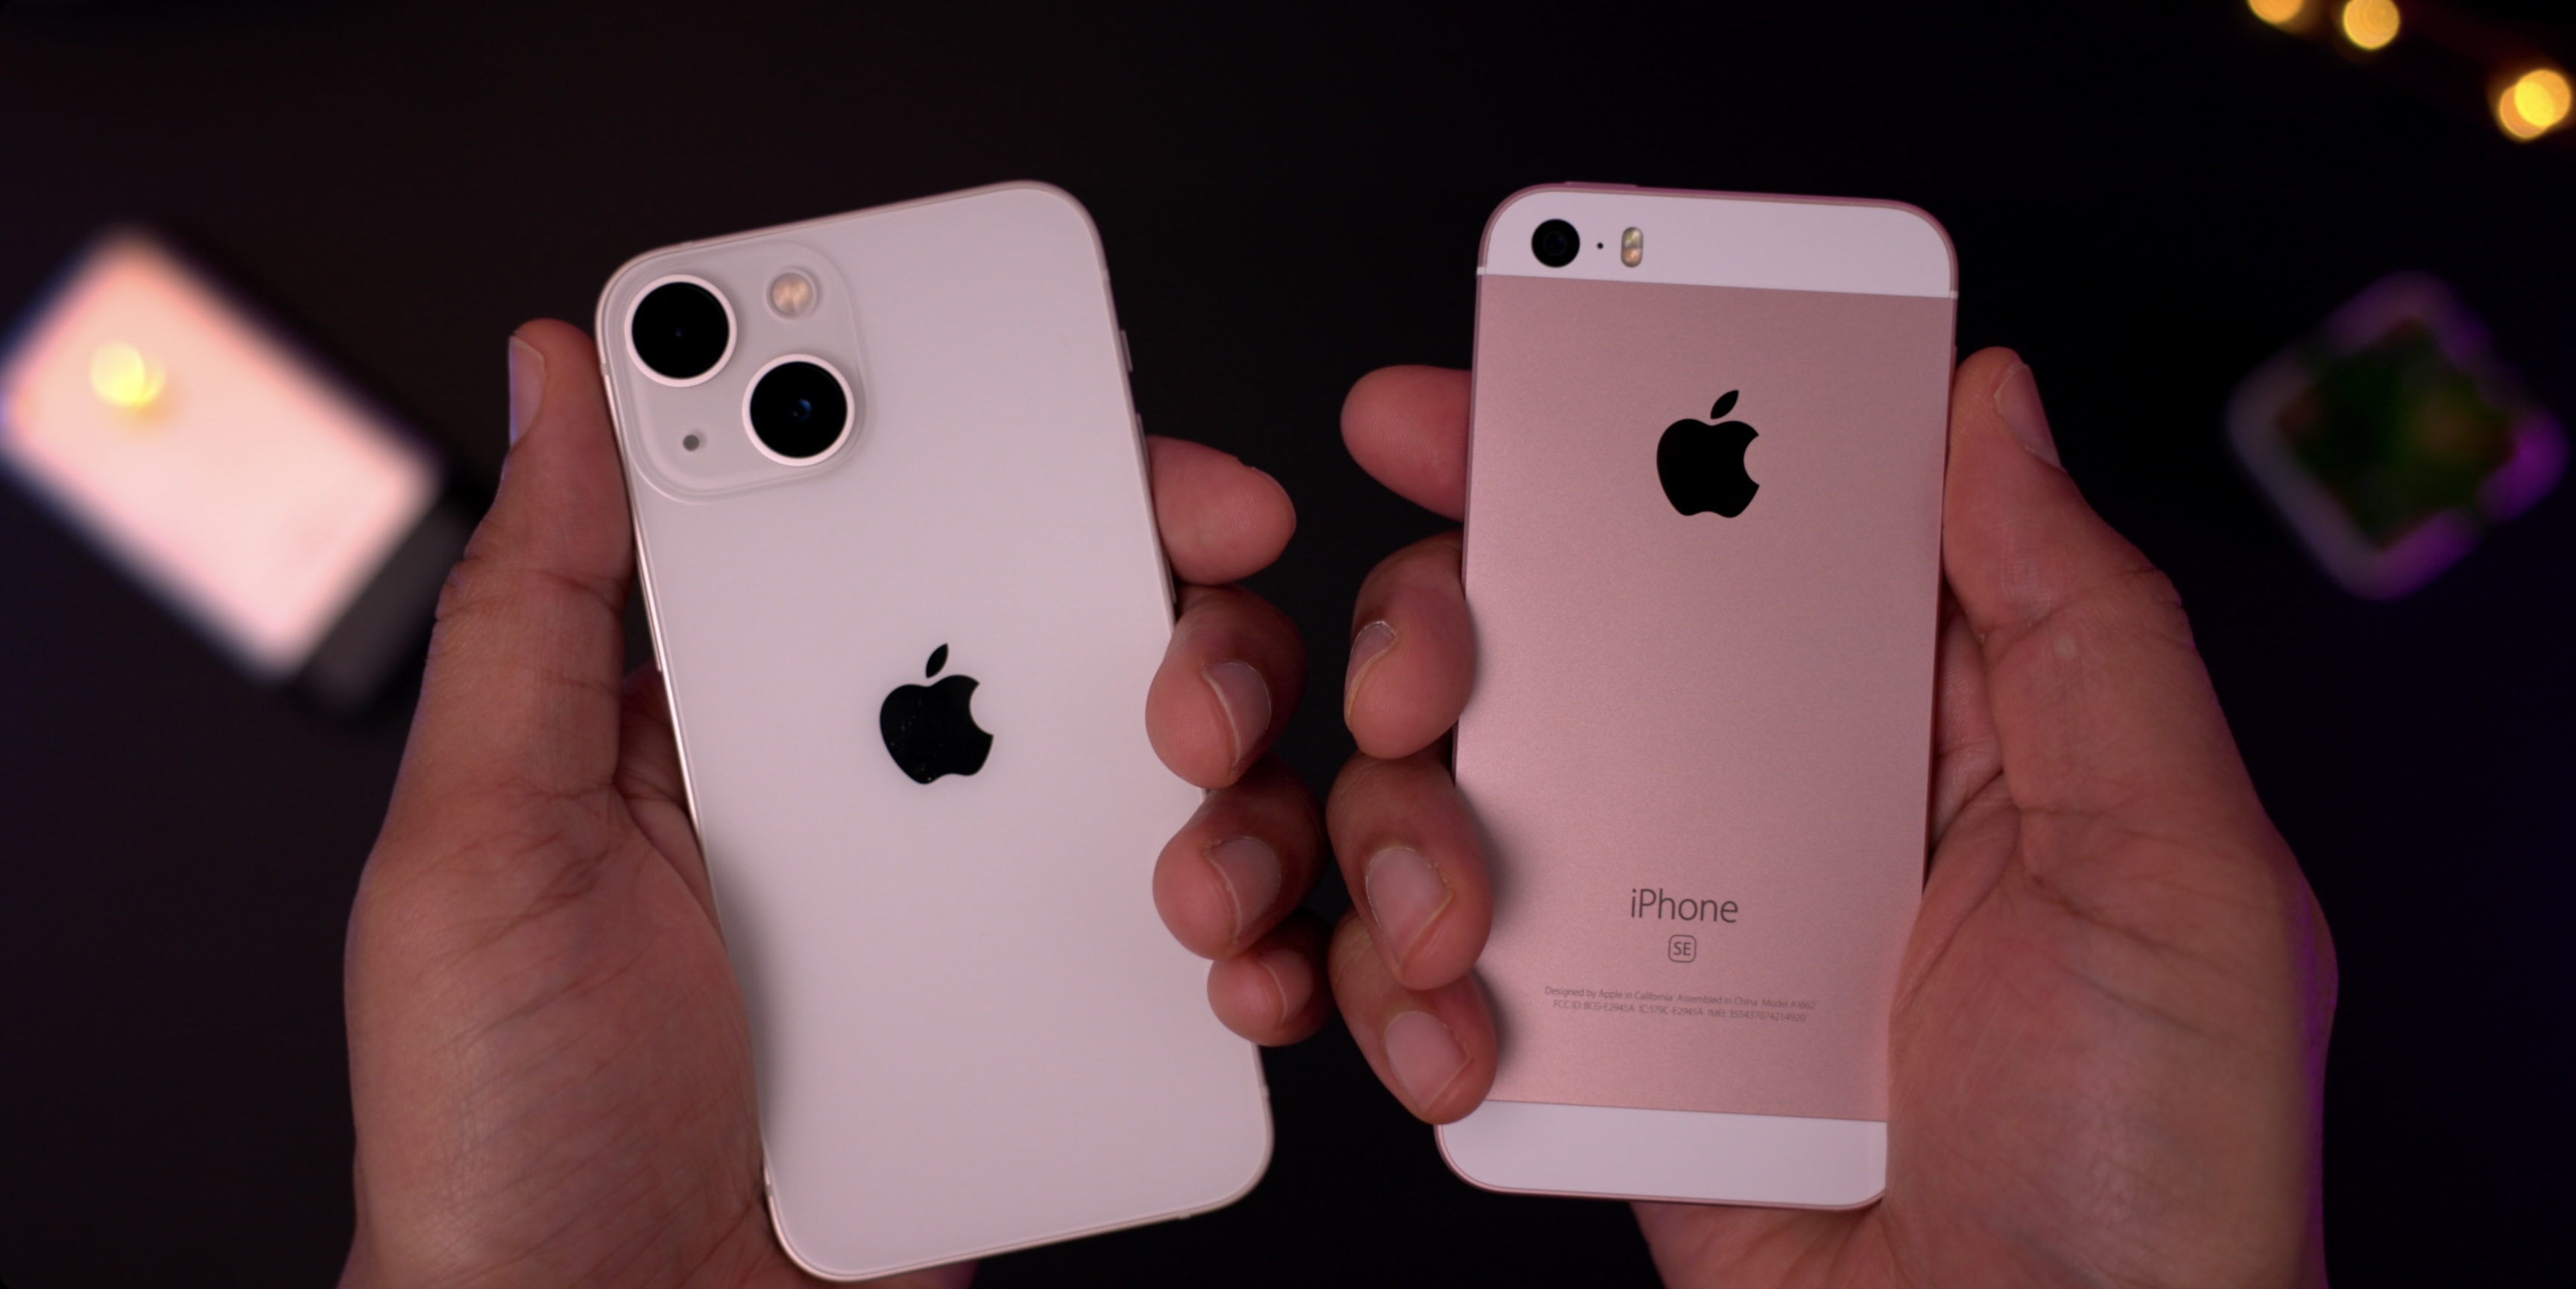 iPhone mini and iPhone SE